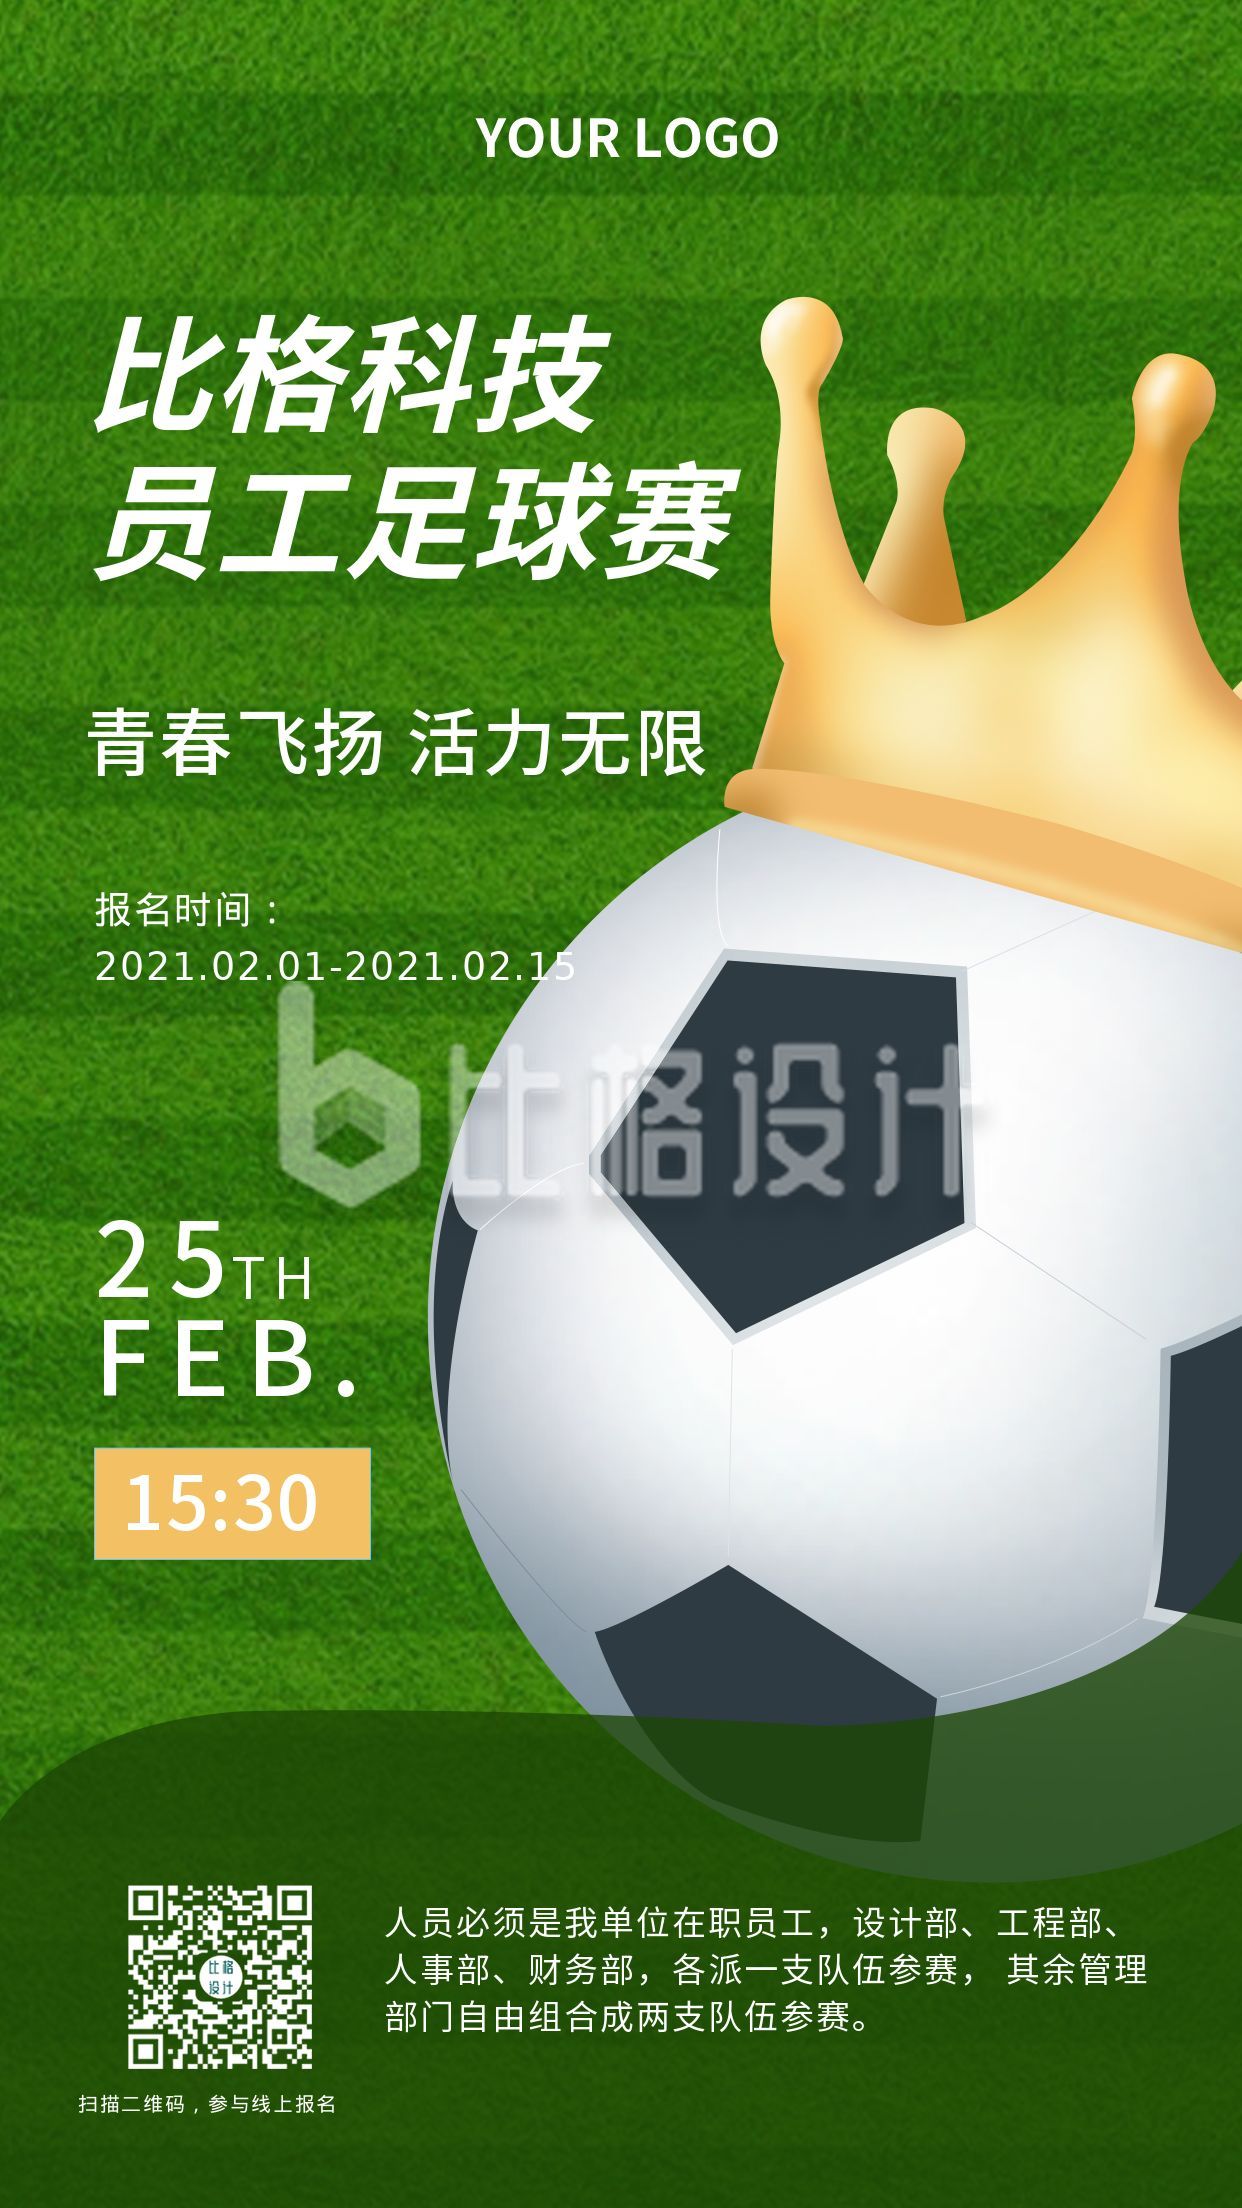 欧洲杯企业团建足球比赛活动宣传手机海报